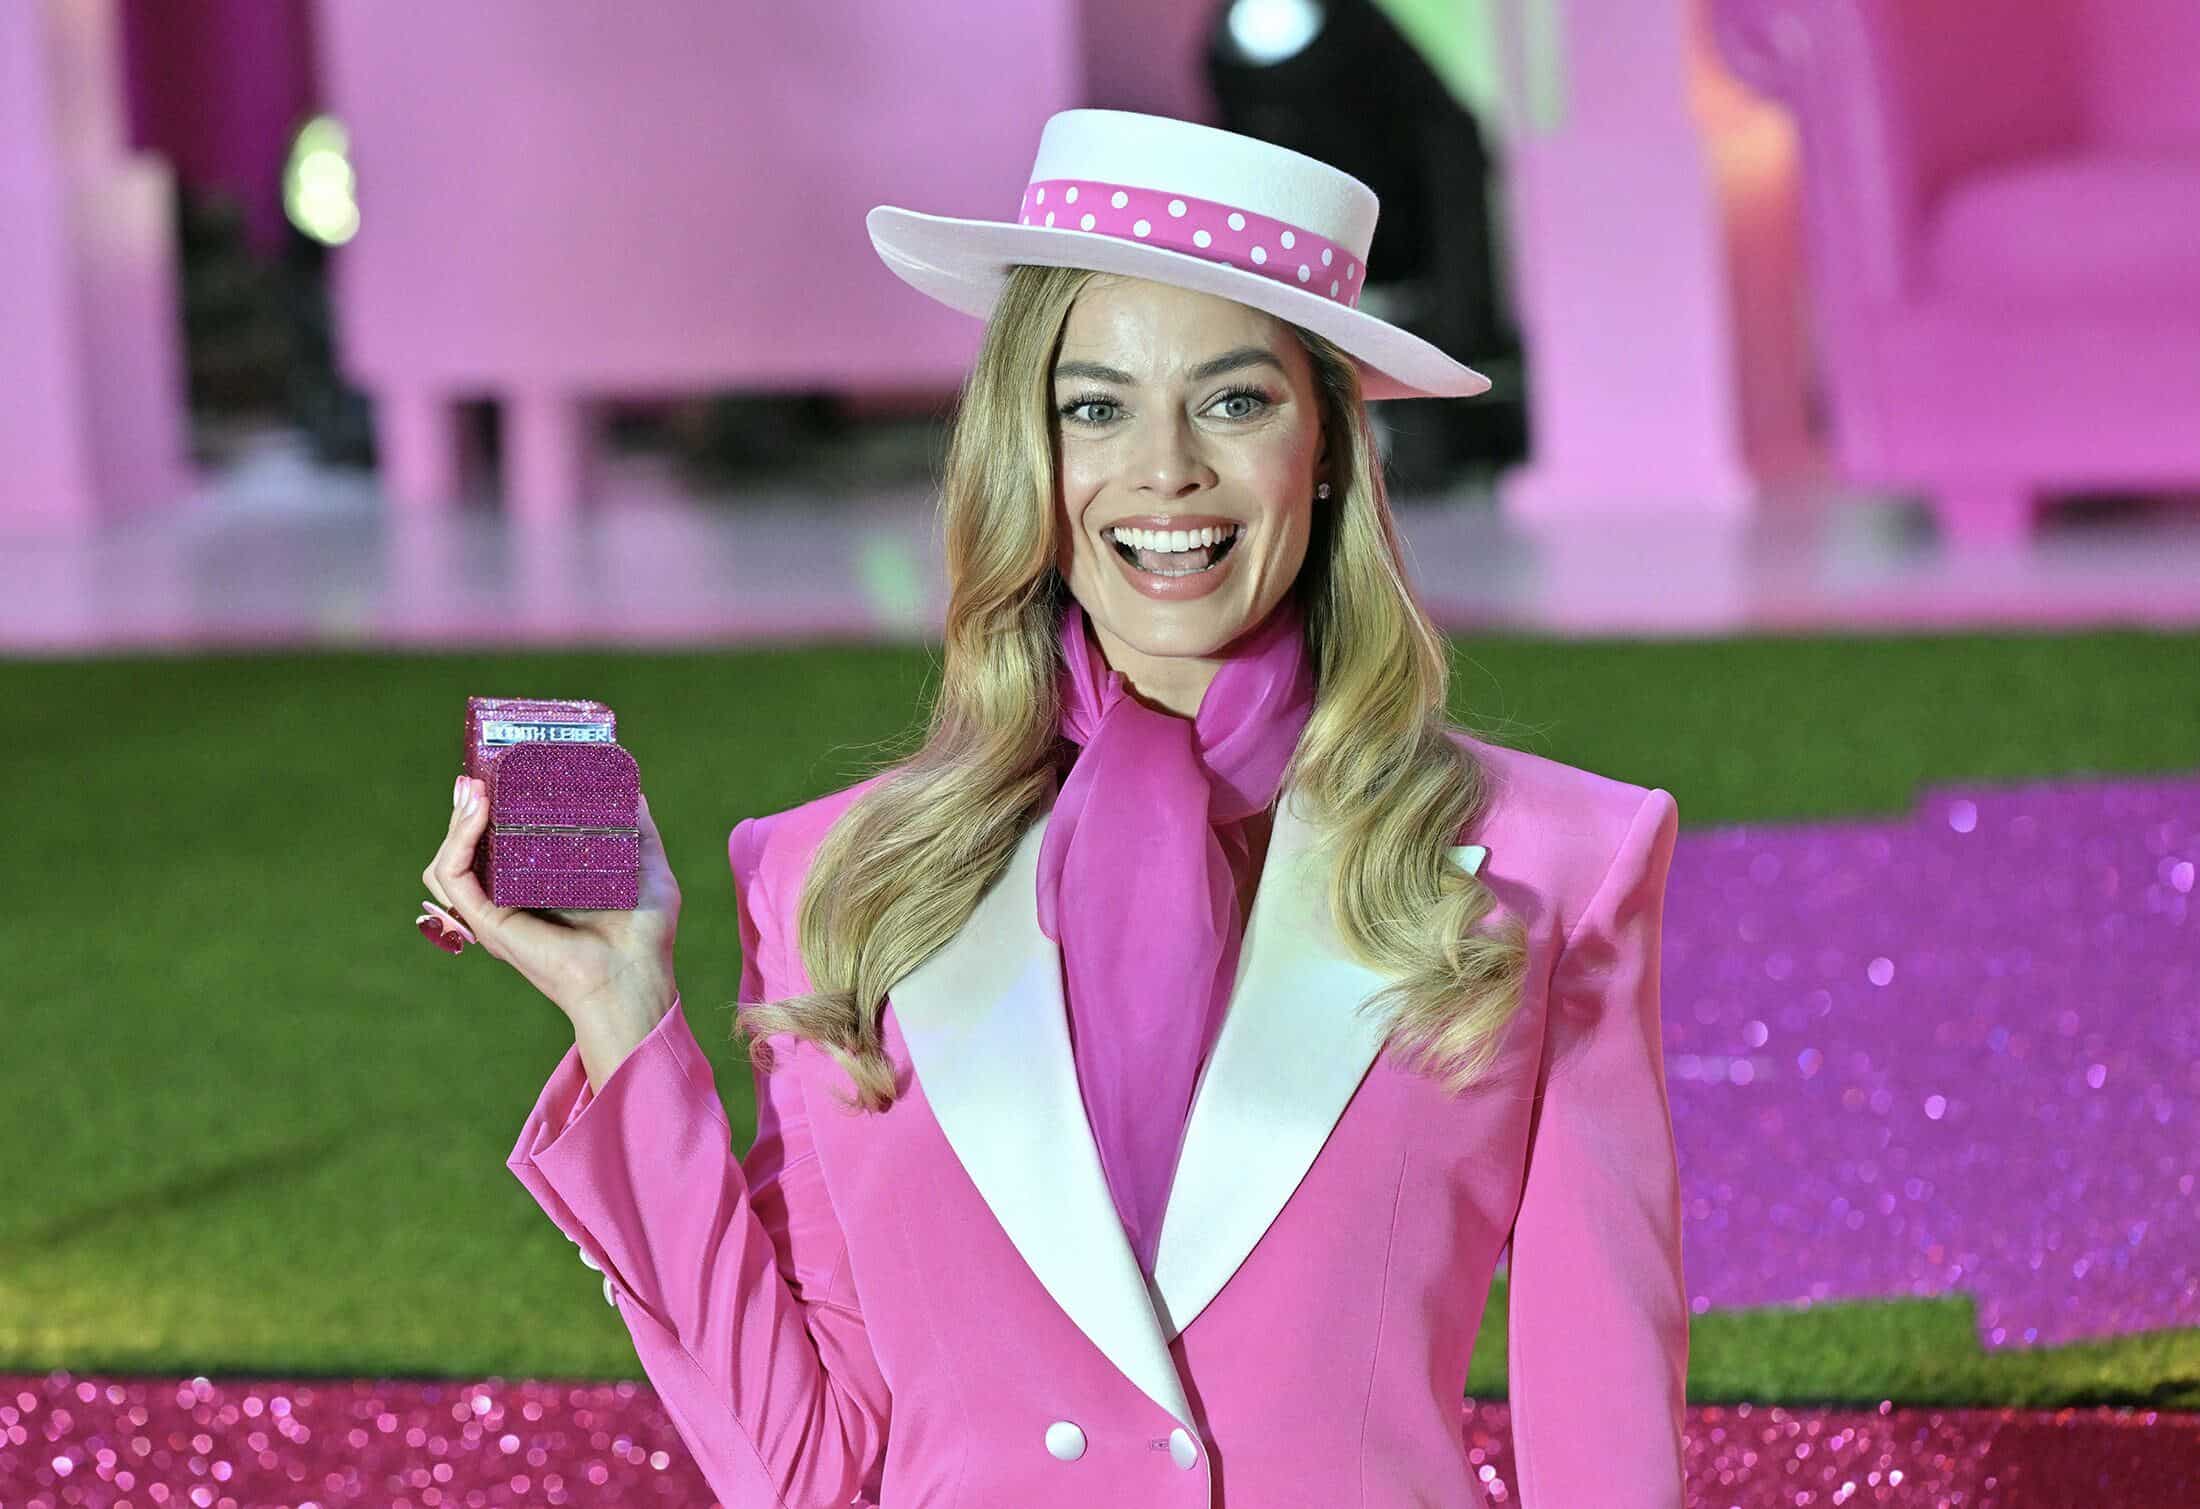 Mattel, fabricante de Barbie, aumenta sus ventas gracias al fenómeno de la película